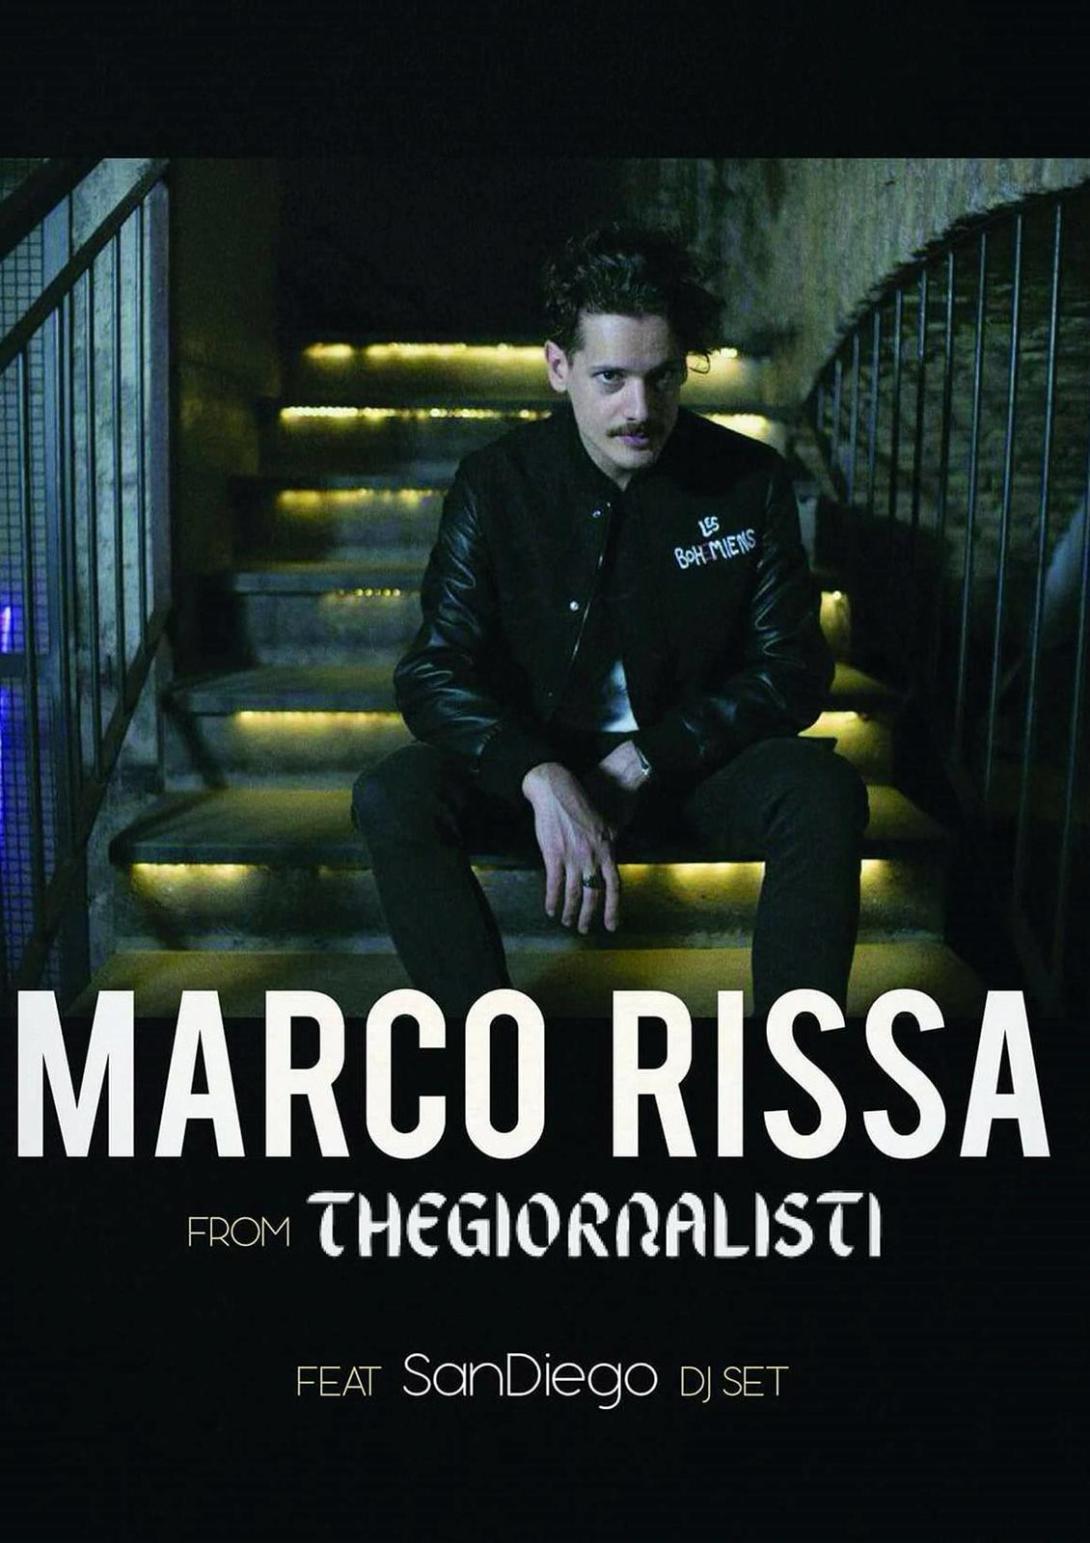 Marco Rissa from Thegiornalisti